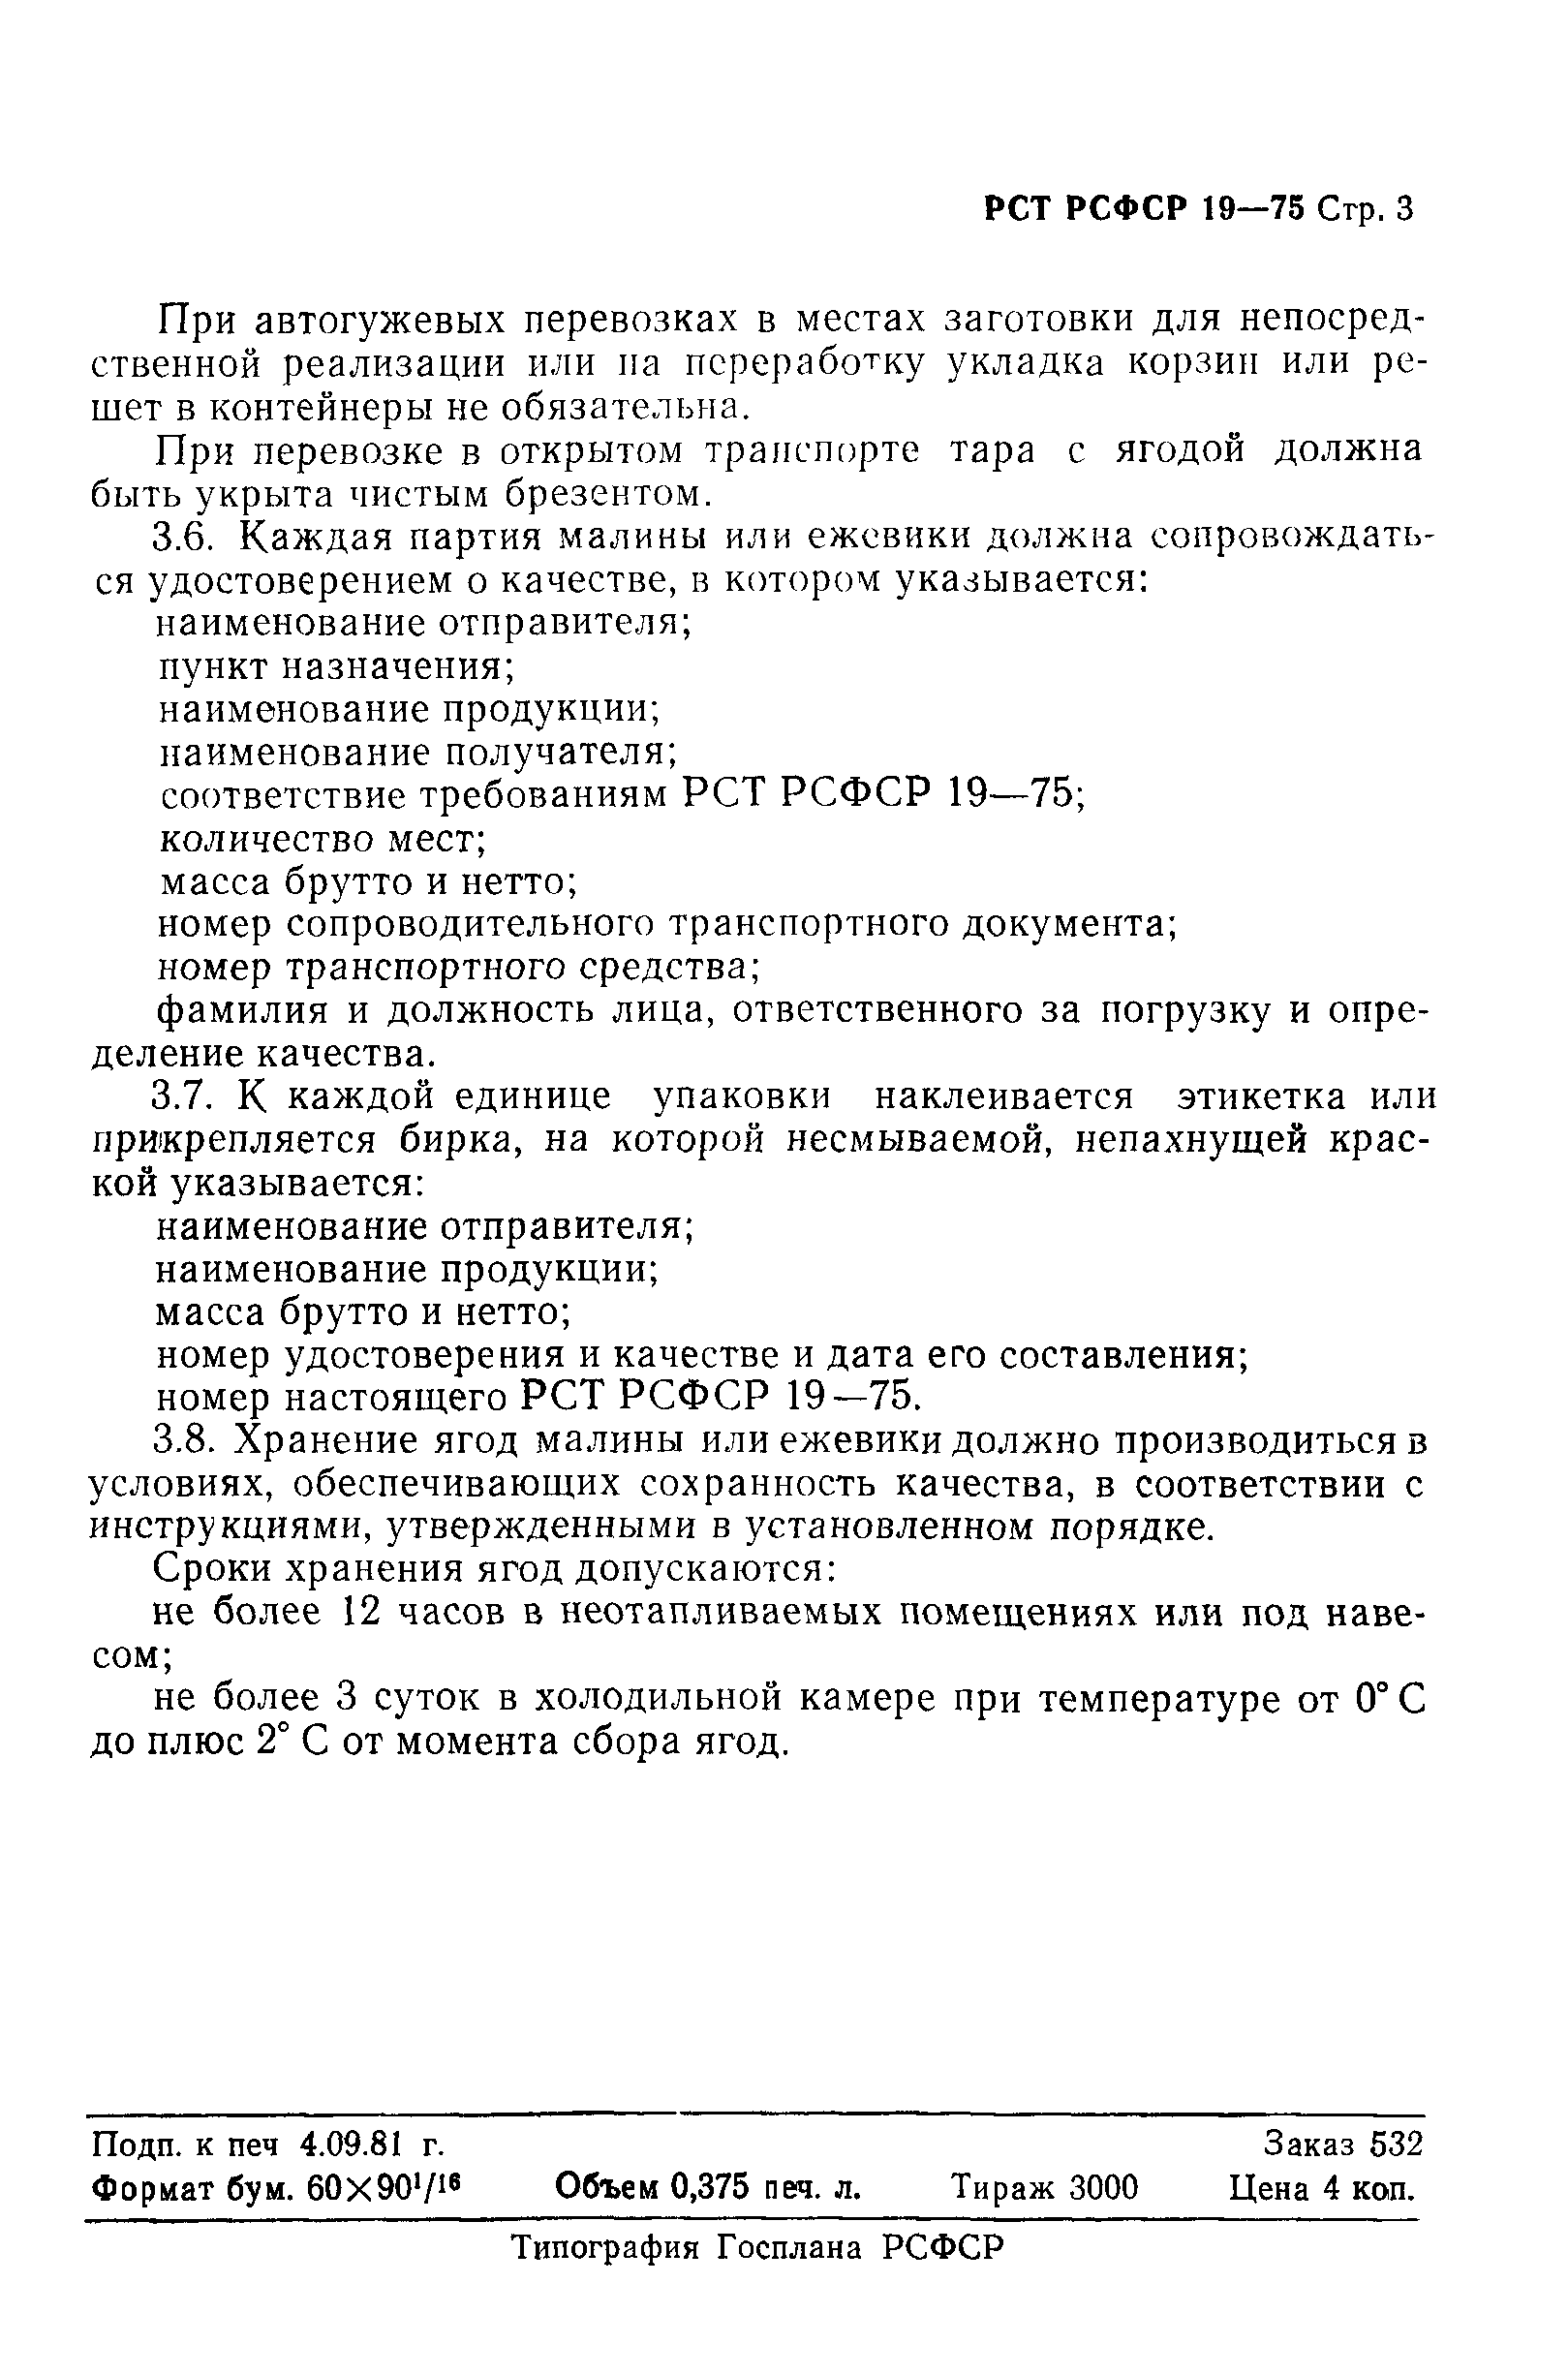 РСТ РСФСР 19-75